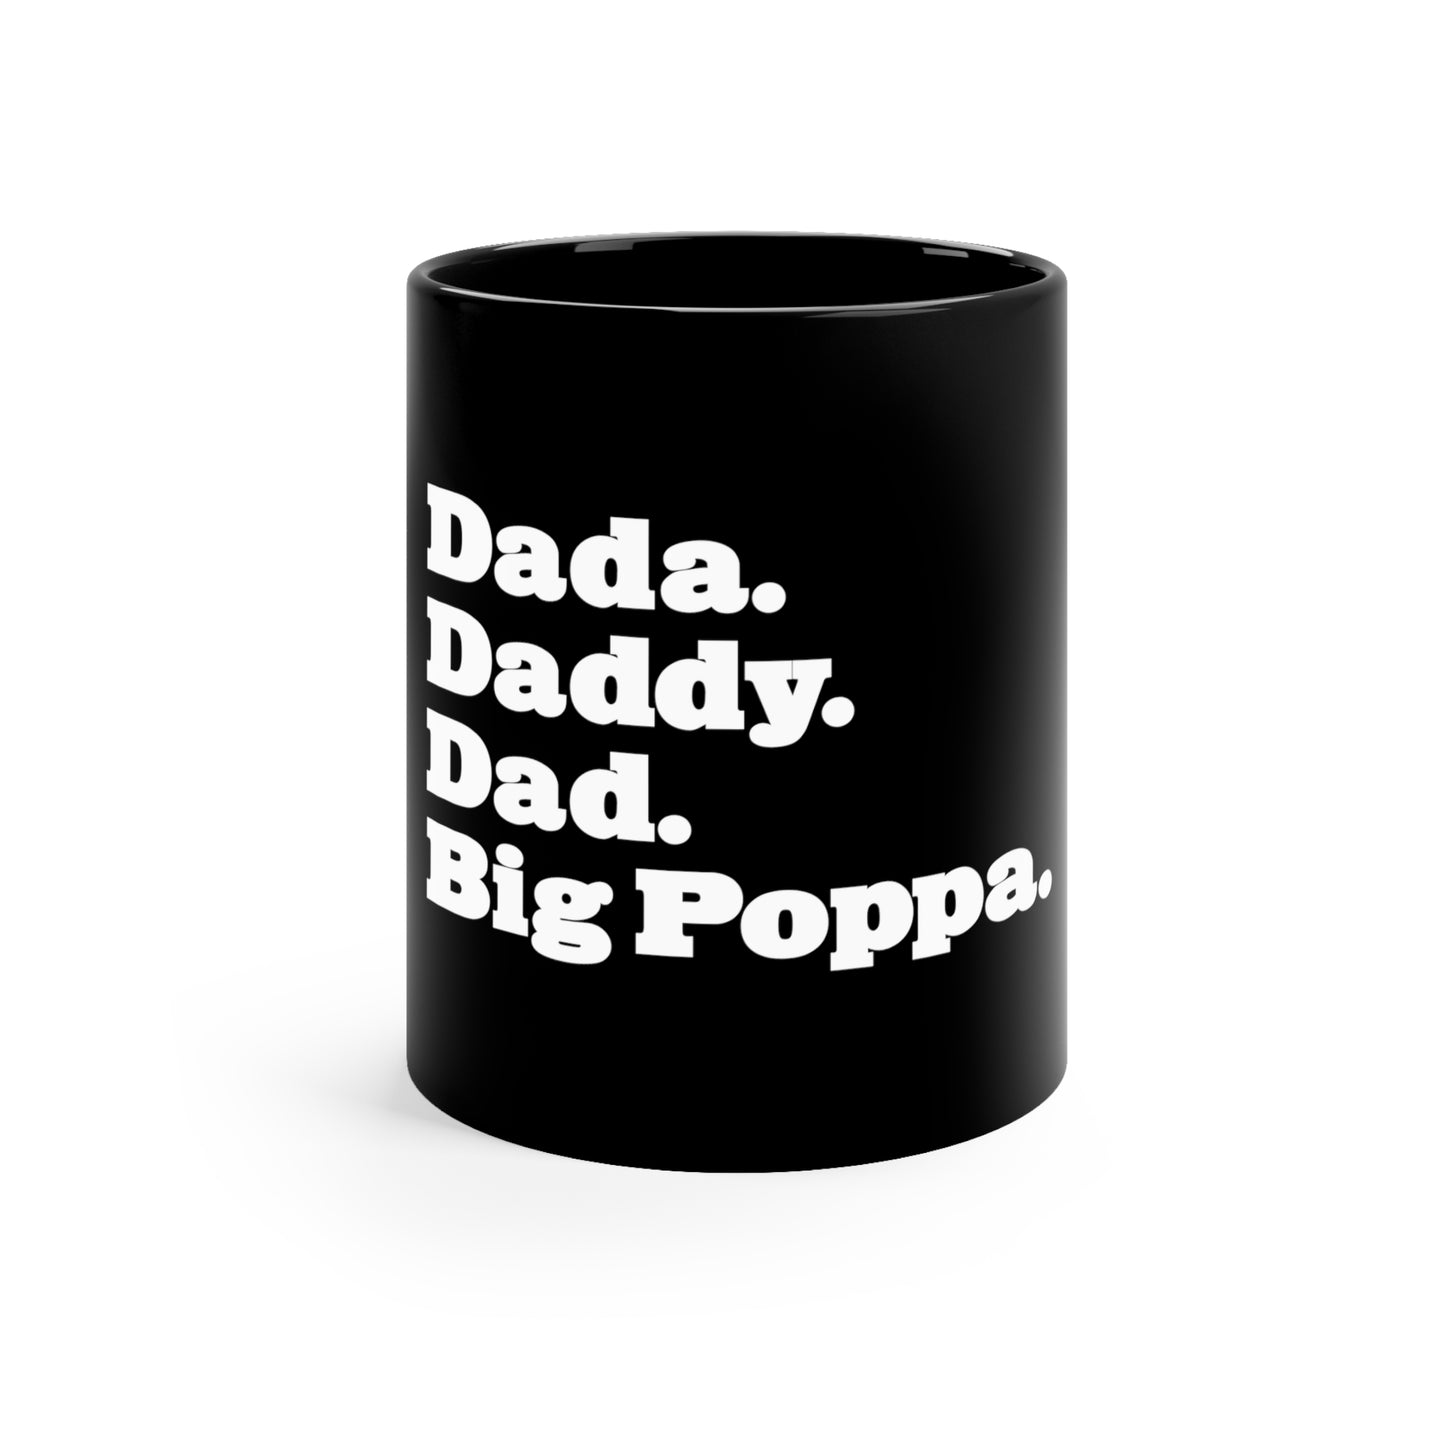 Dada Daddy Dad Big Poppa 11oz Black Mug Great Father's Day Gift for Dada Daddy Dad Big Poppa